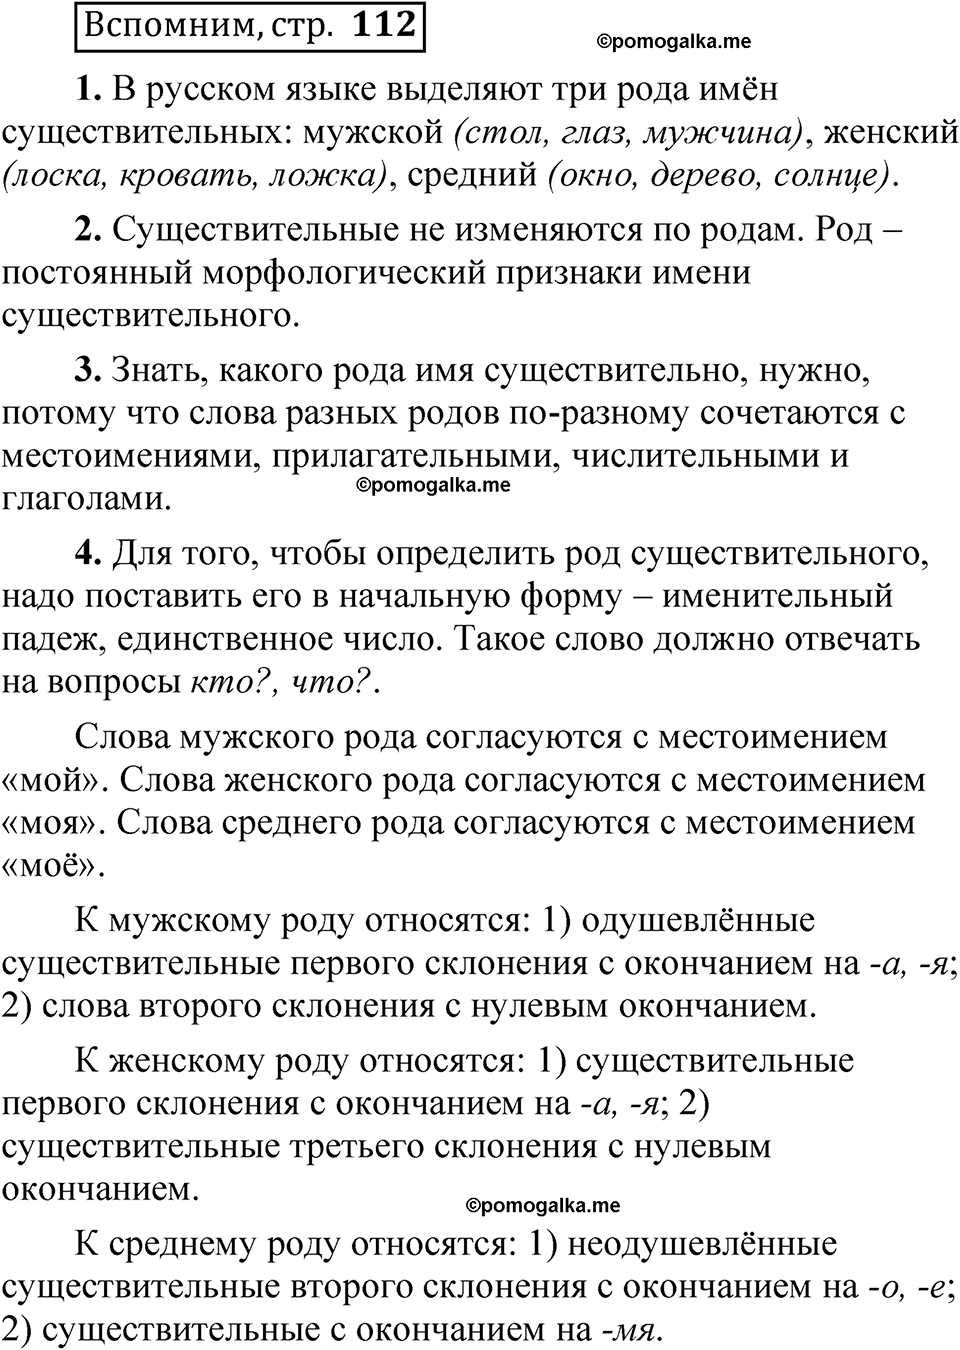 страница 112 Вспомним русский язык 5 класс Быстрова, Кибирева 2 часть 2021 год